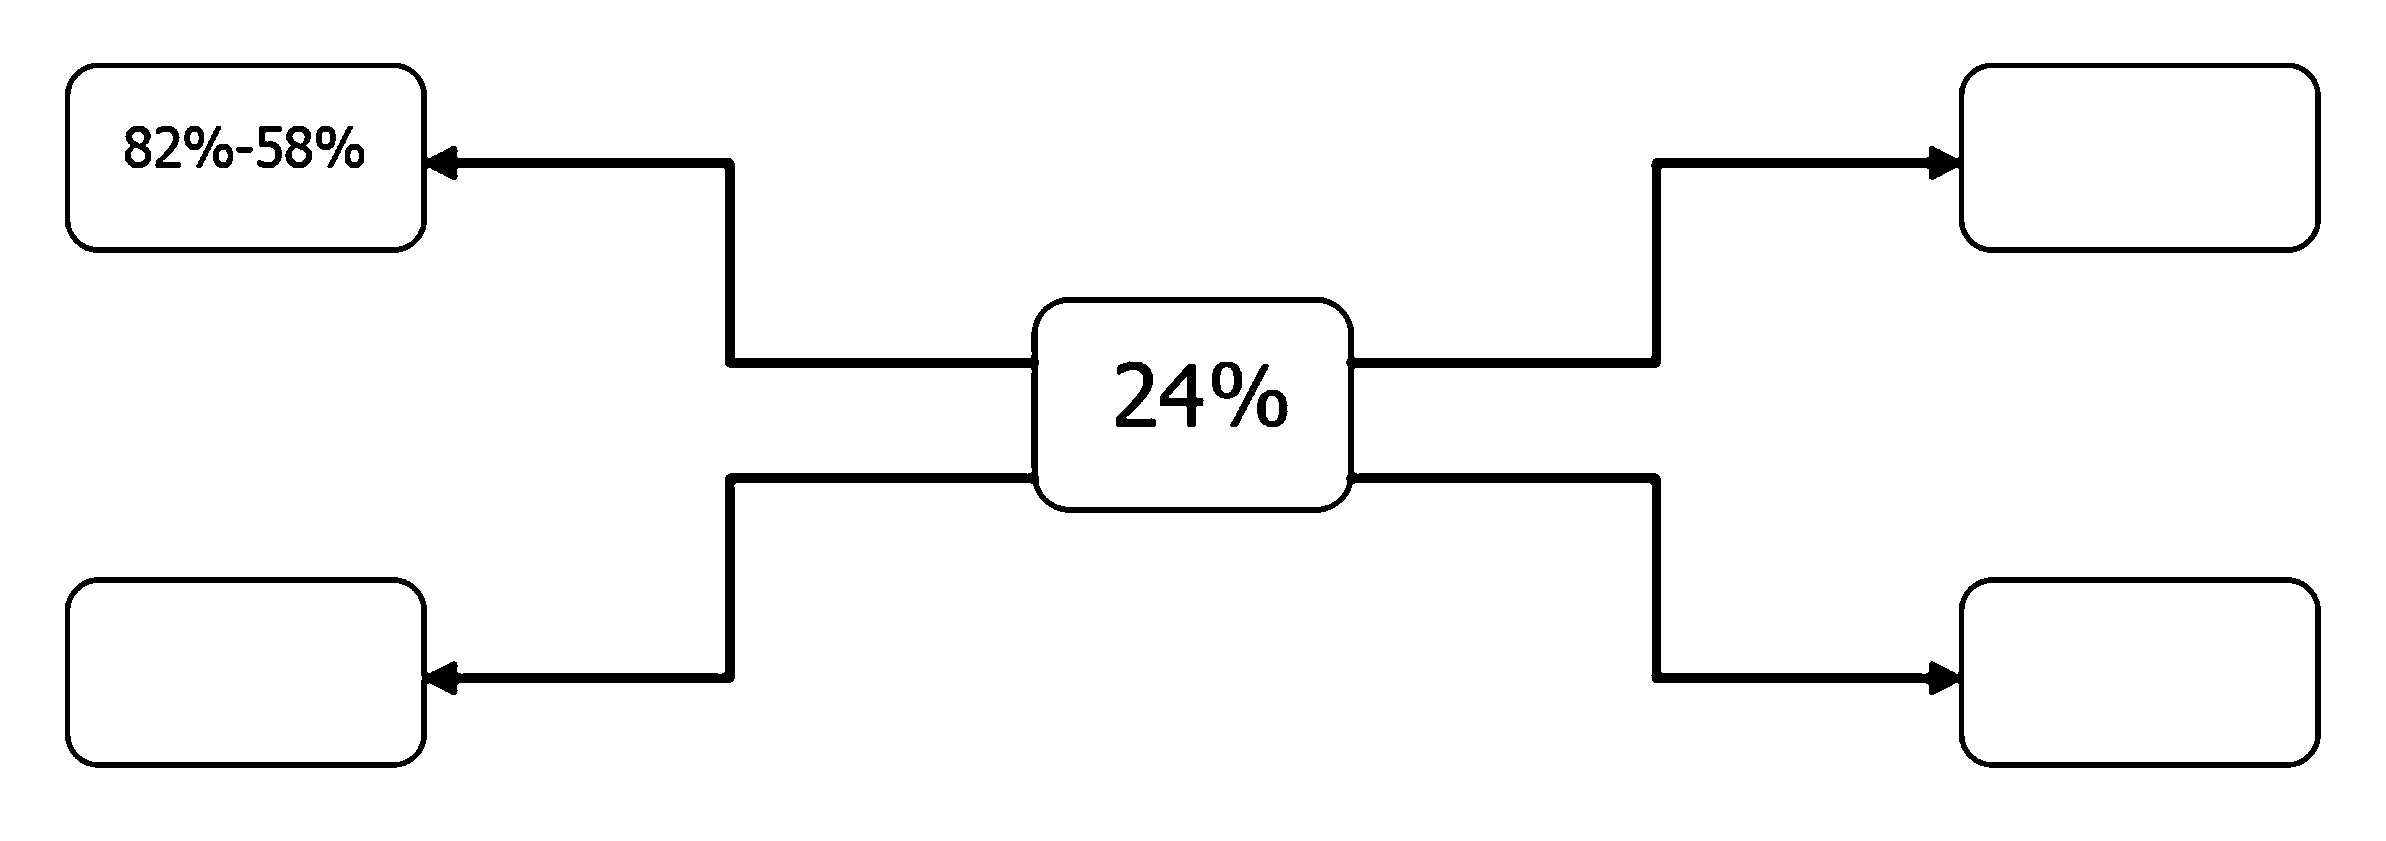 82%-58% 24%